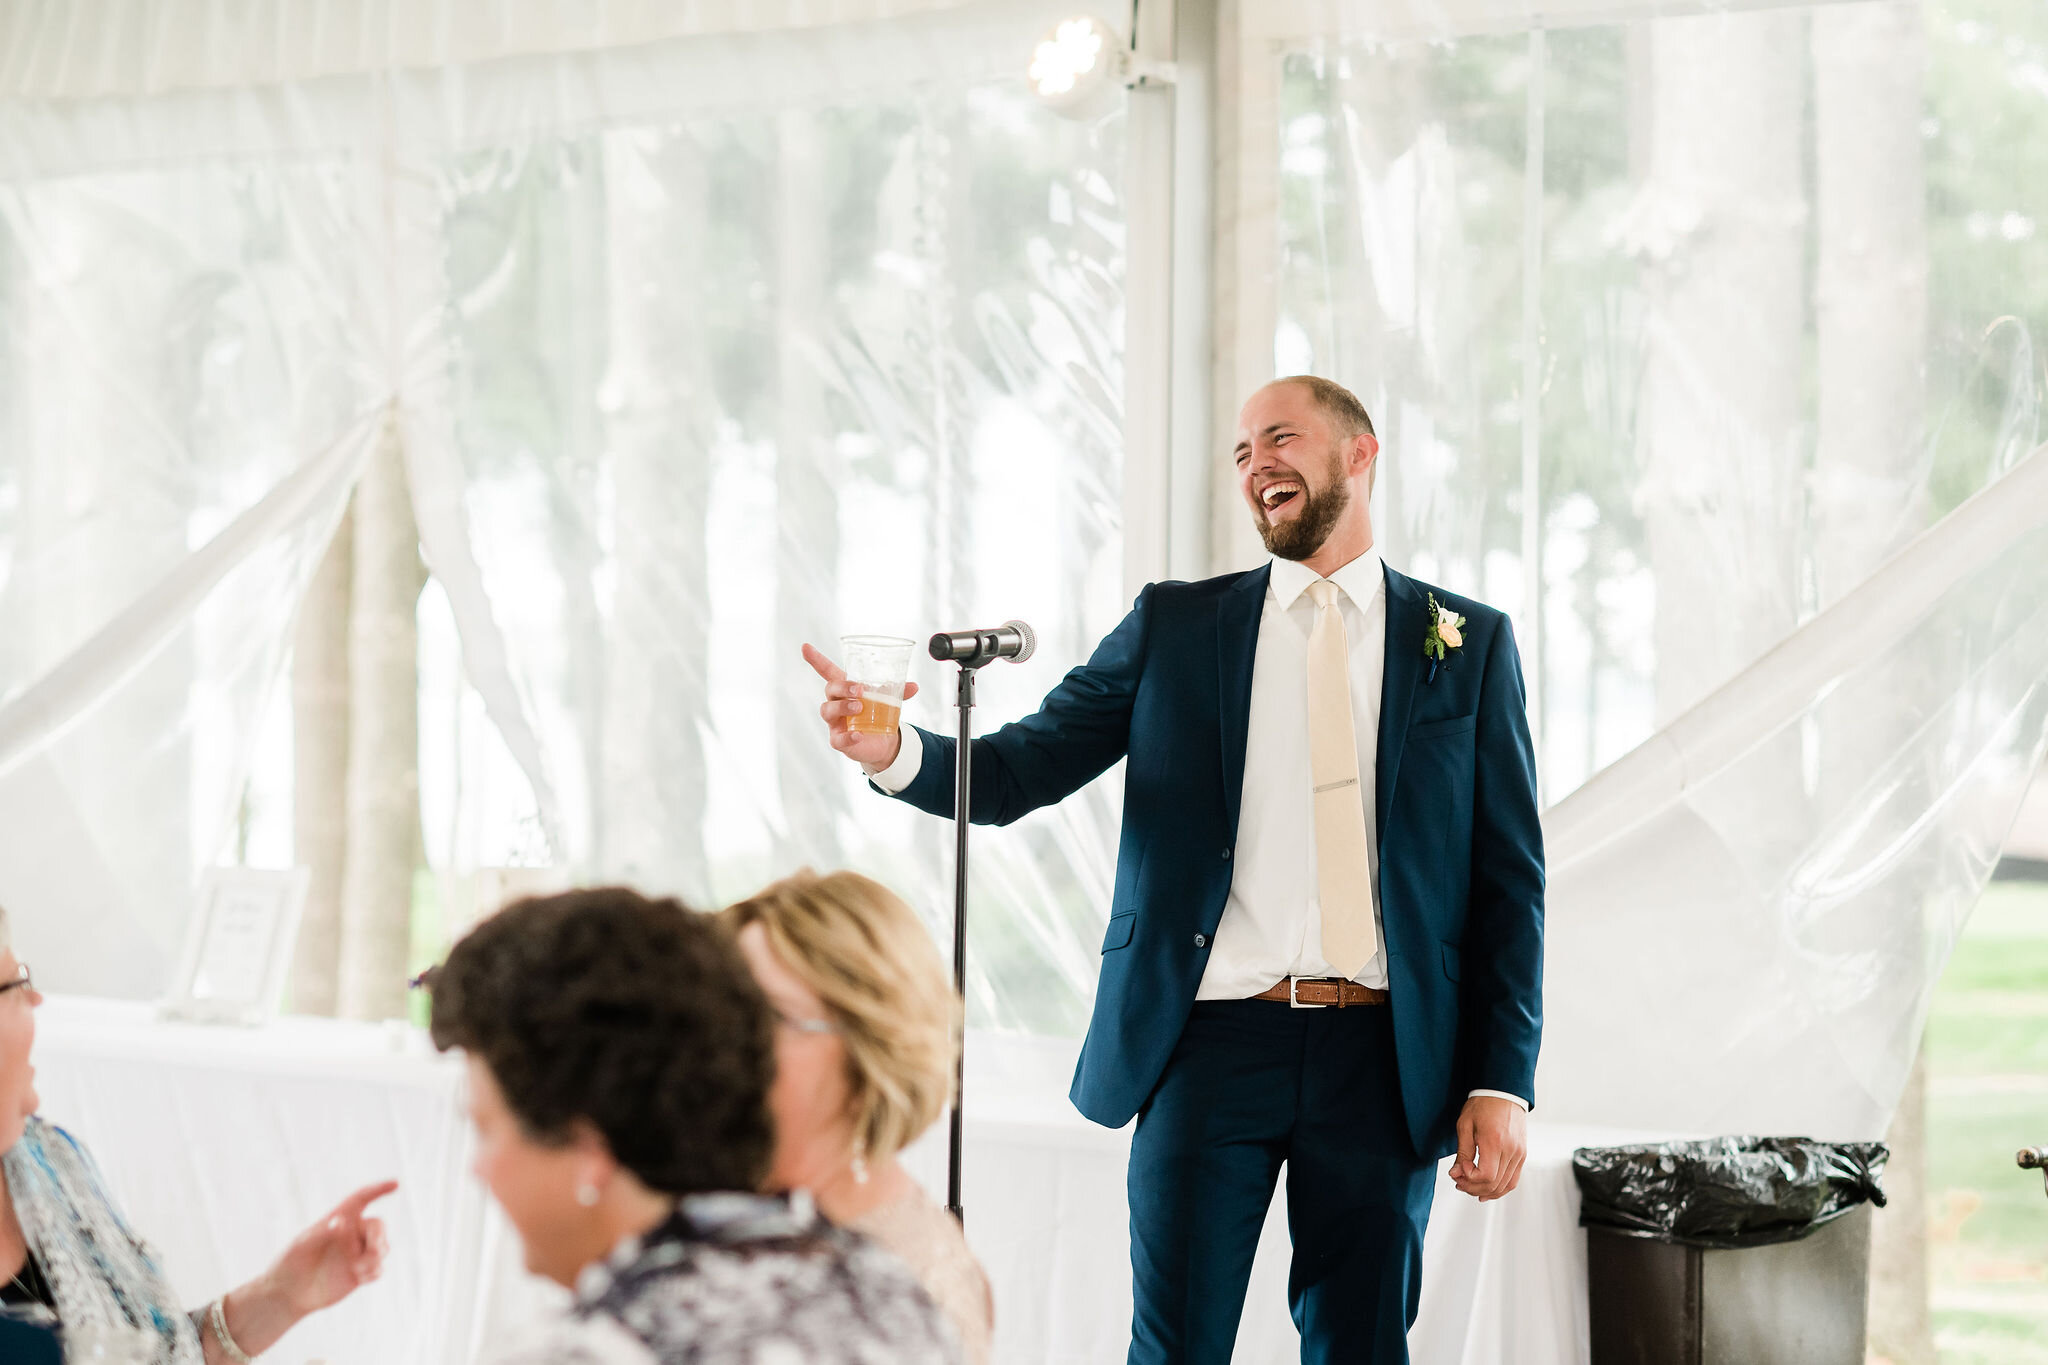 Wedding guest speaking